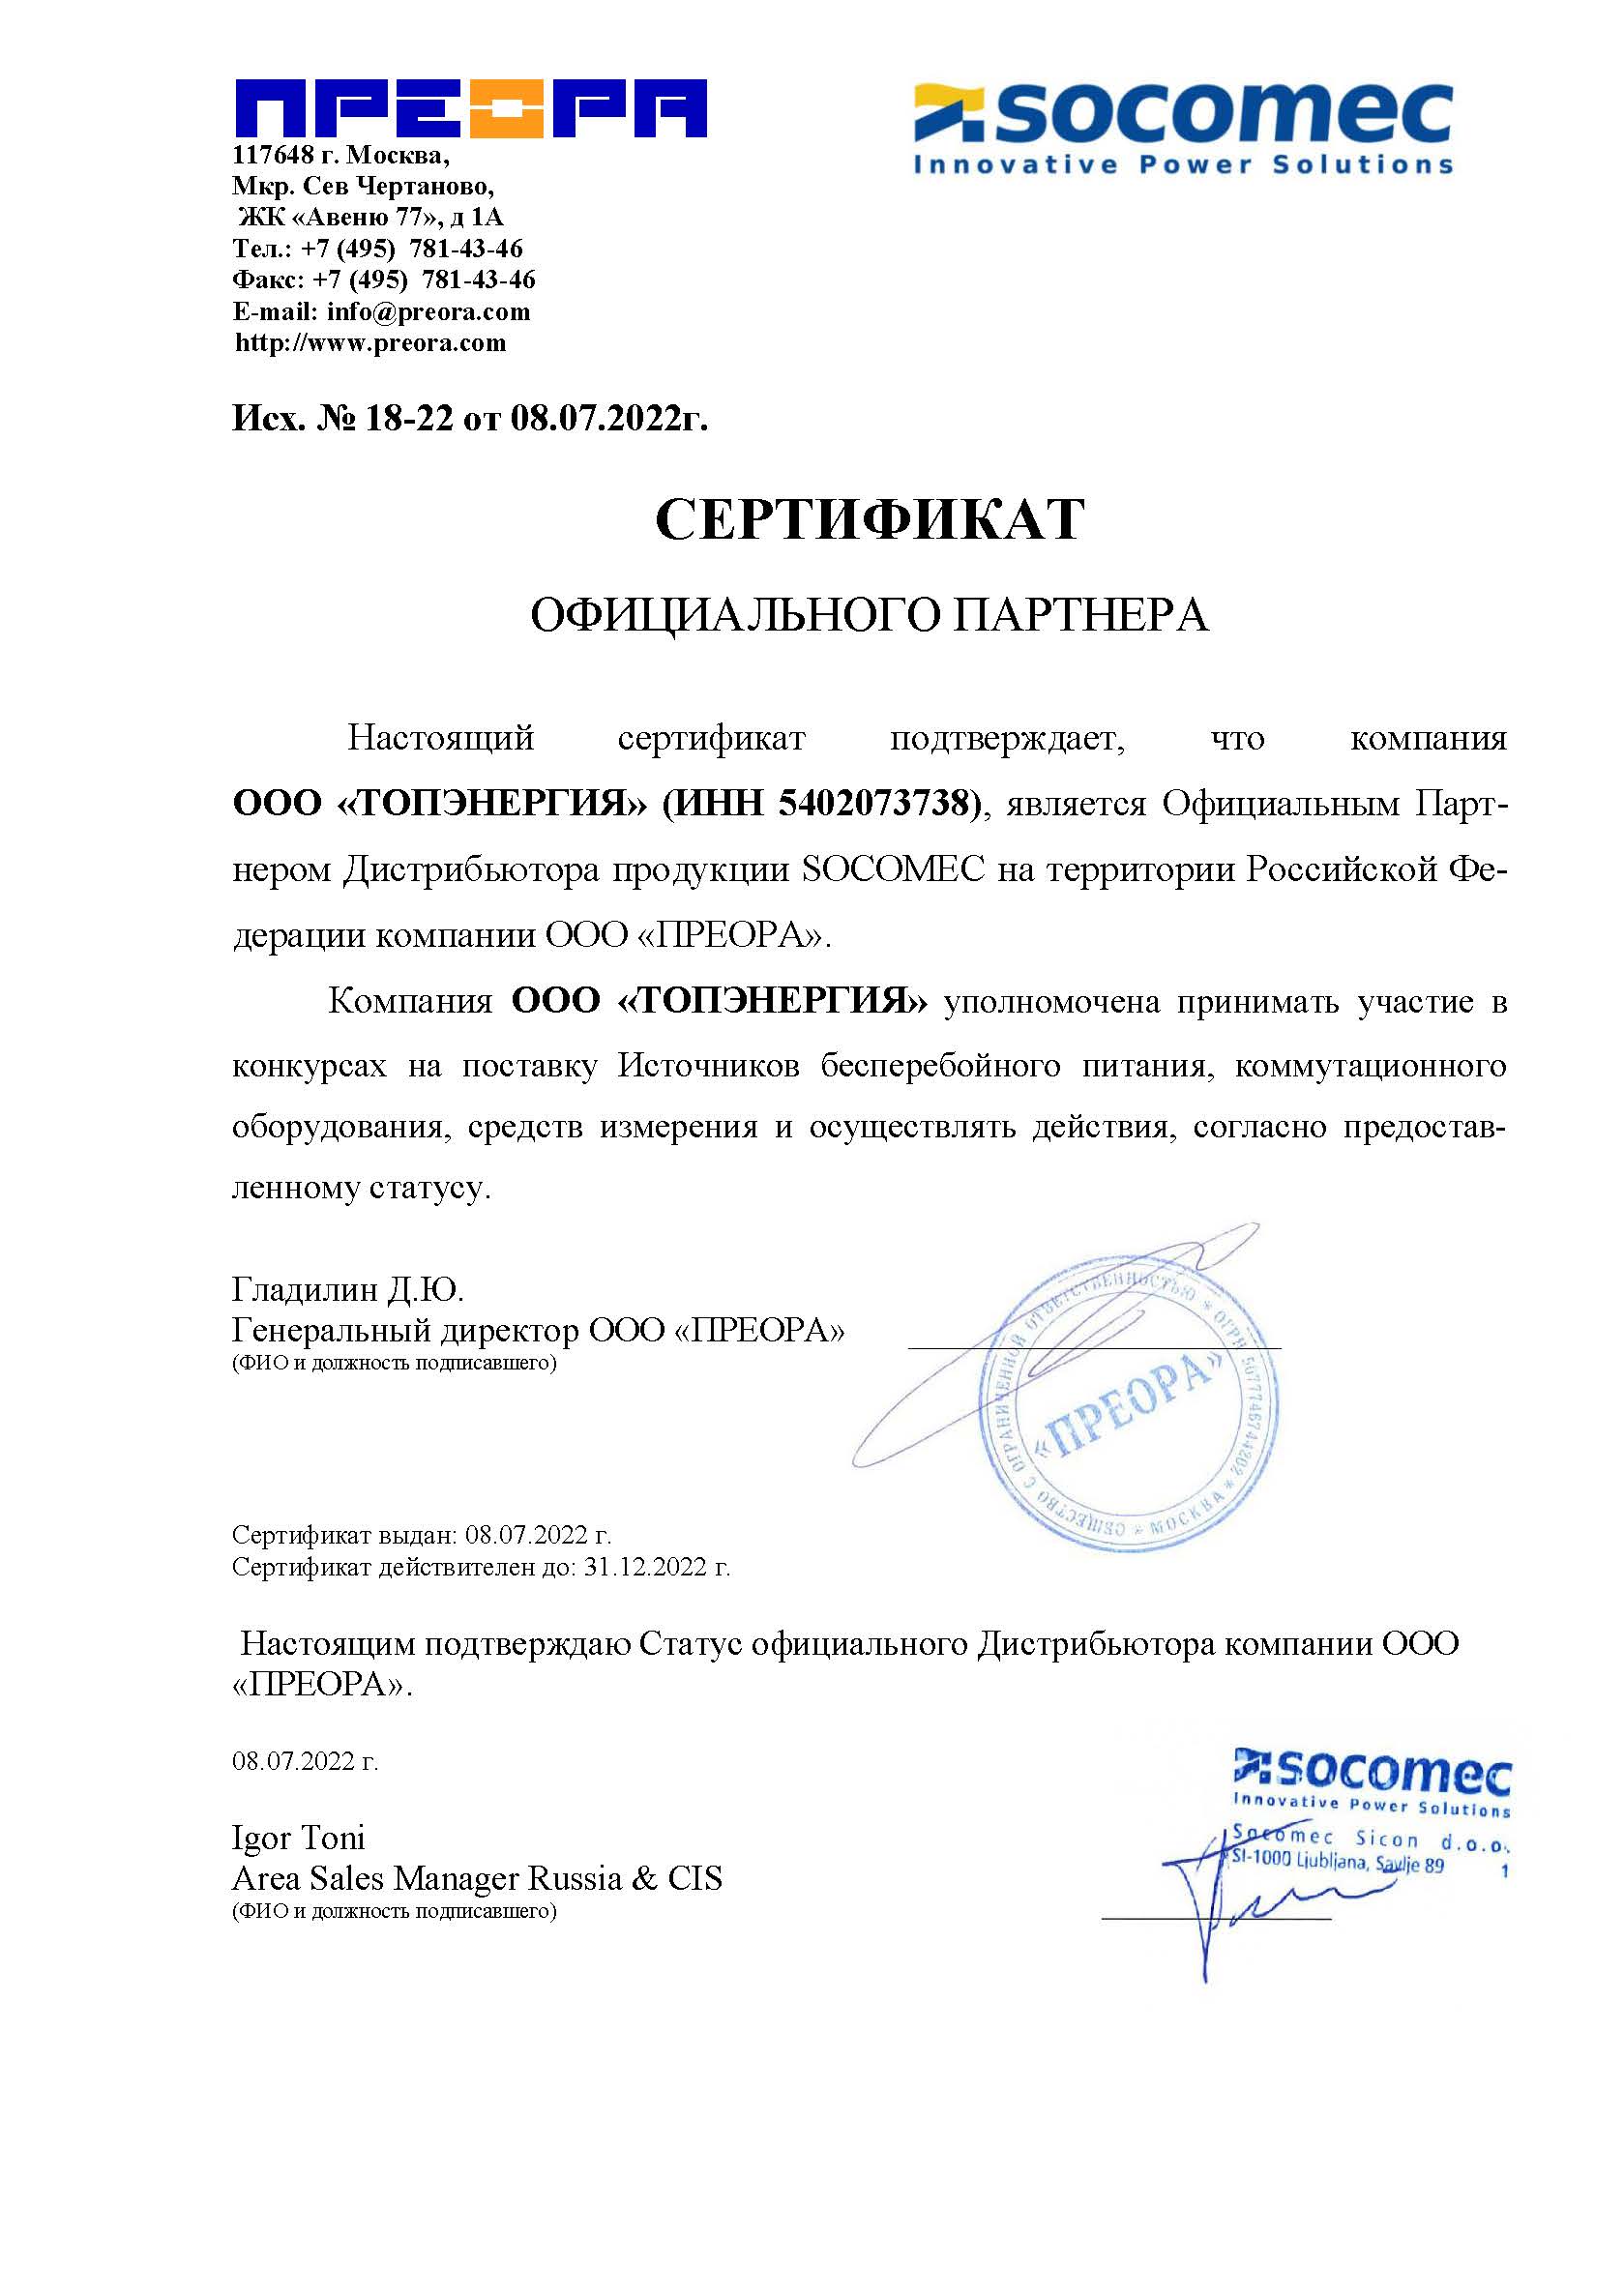 Сертификат официального партнера Socomec